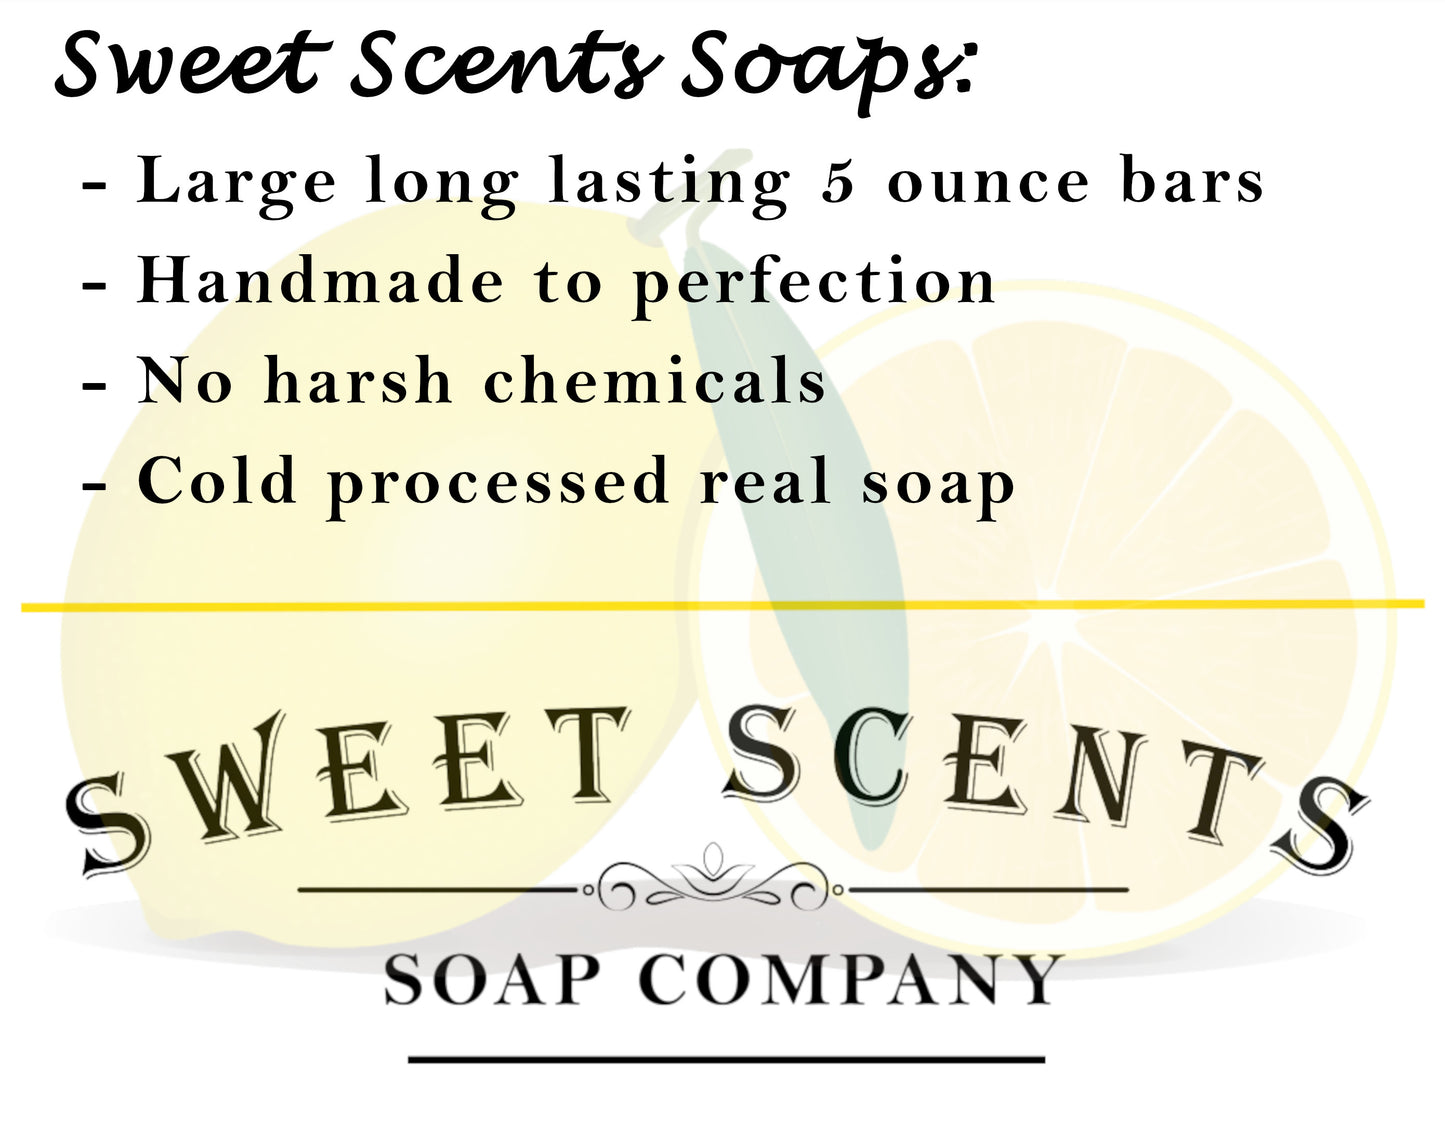 Lemon Turmeric Soap